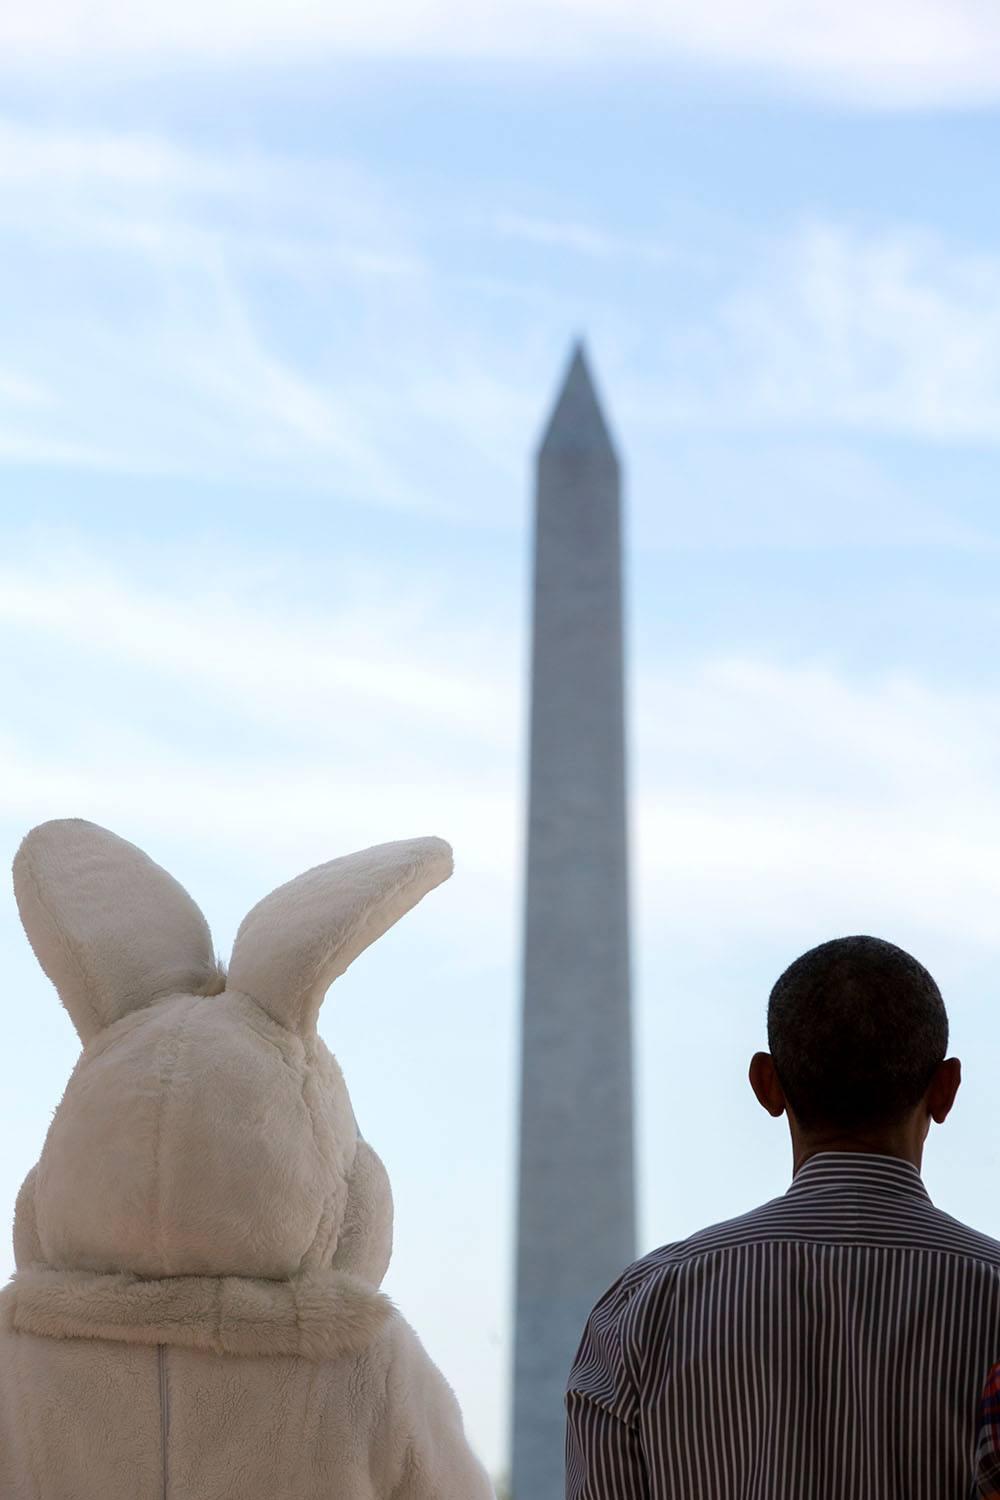 "Інтимний портрет": фотограф Обами показав рідкісні фото екс-президента